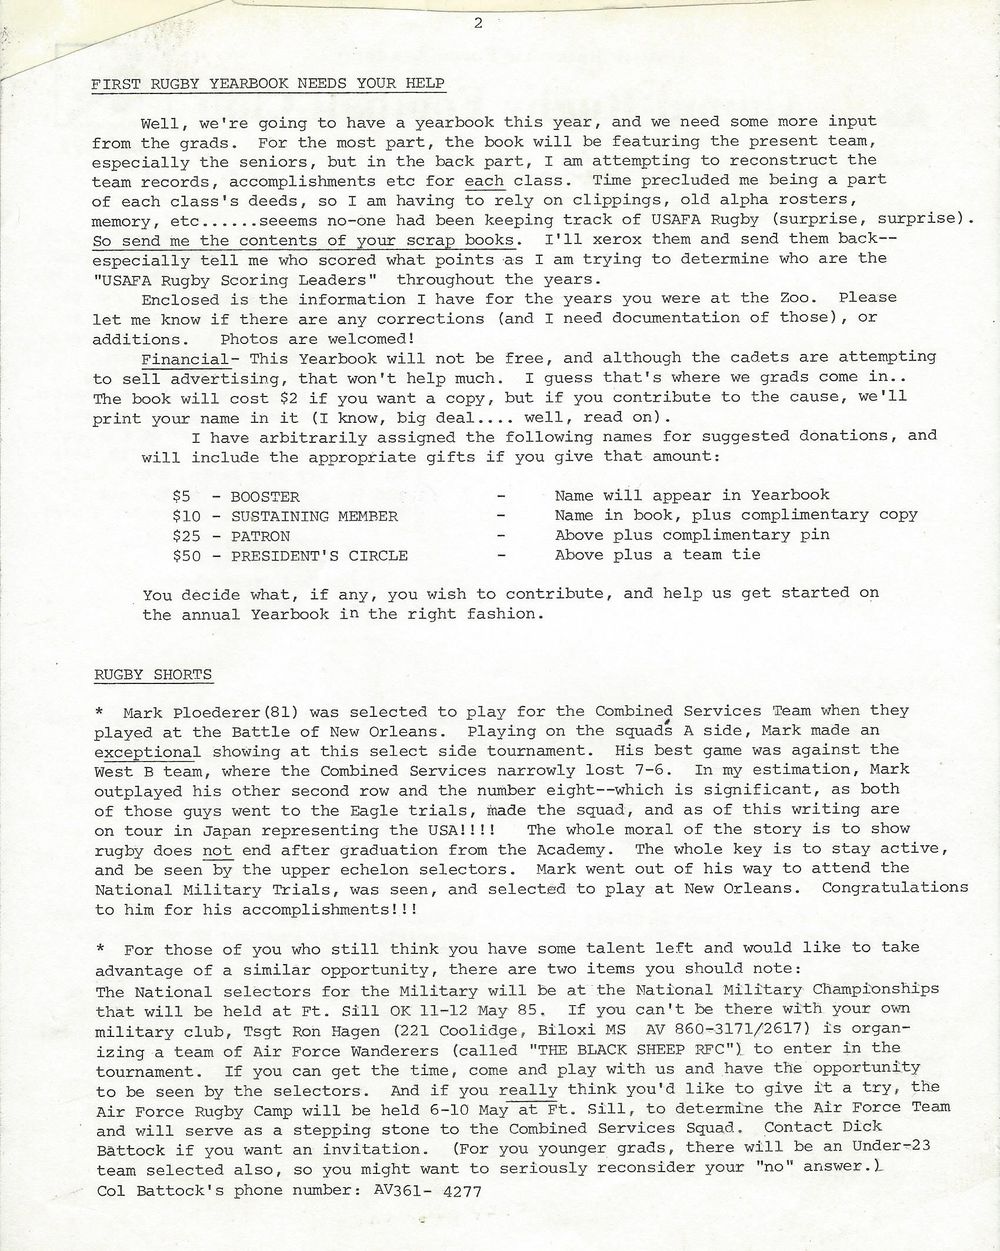 1985 03 Newsletter 2.jpg